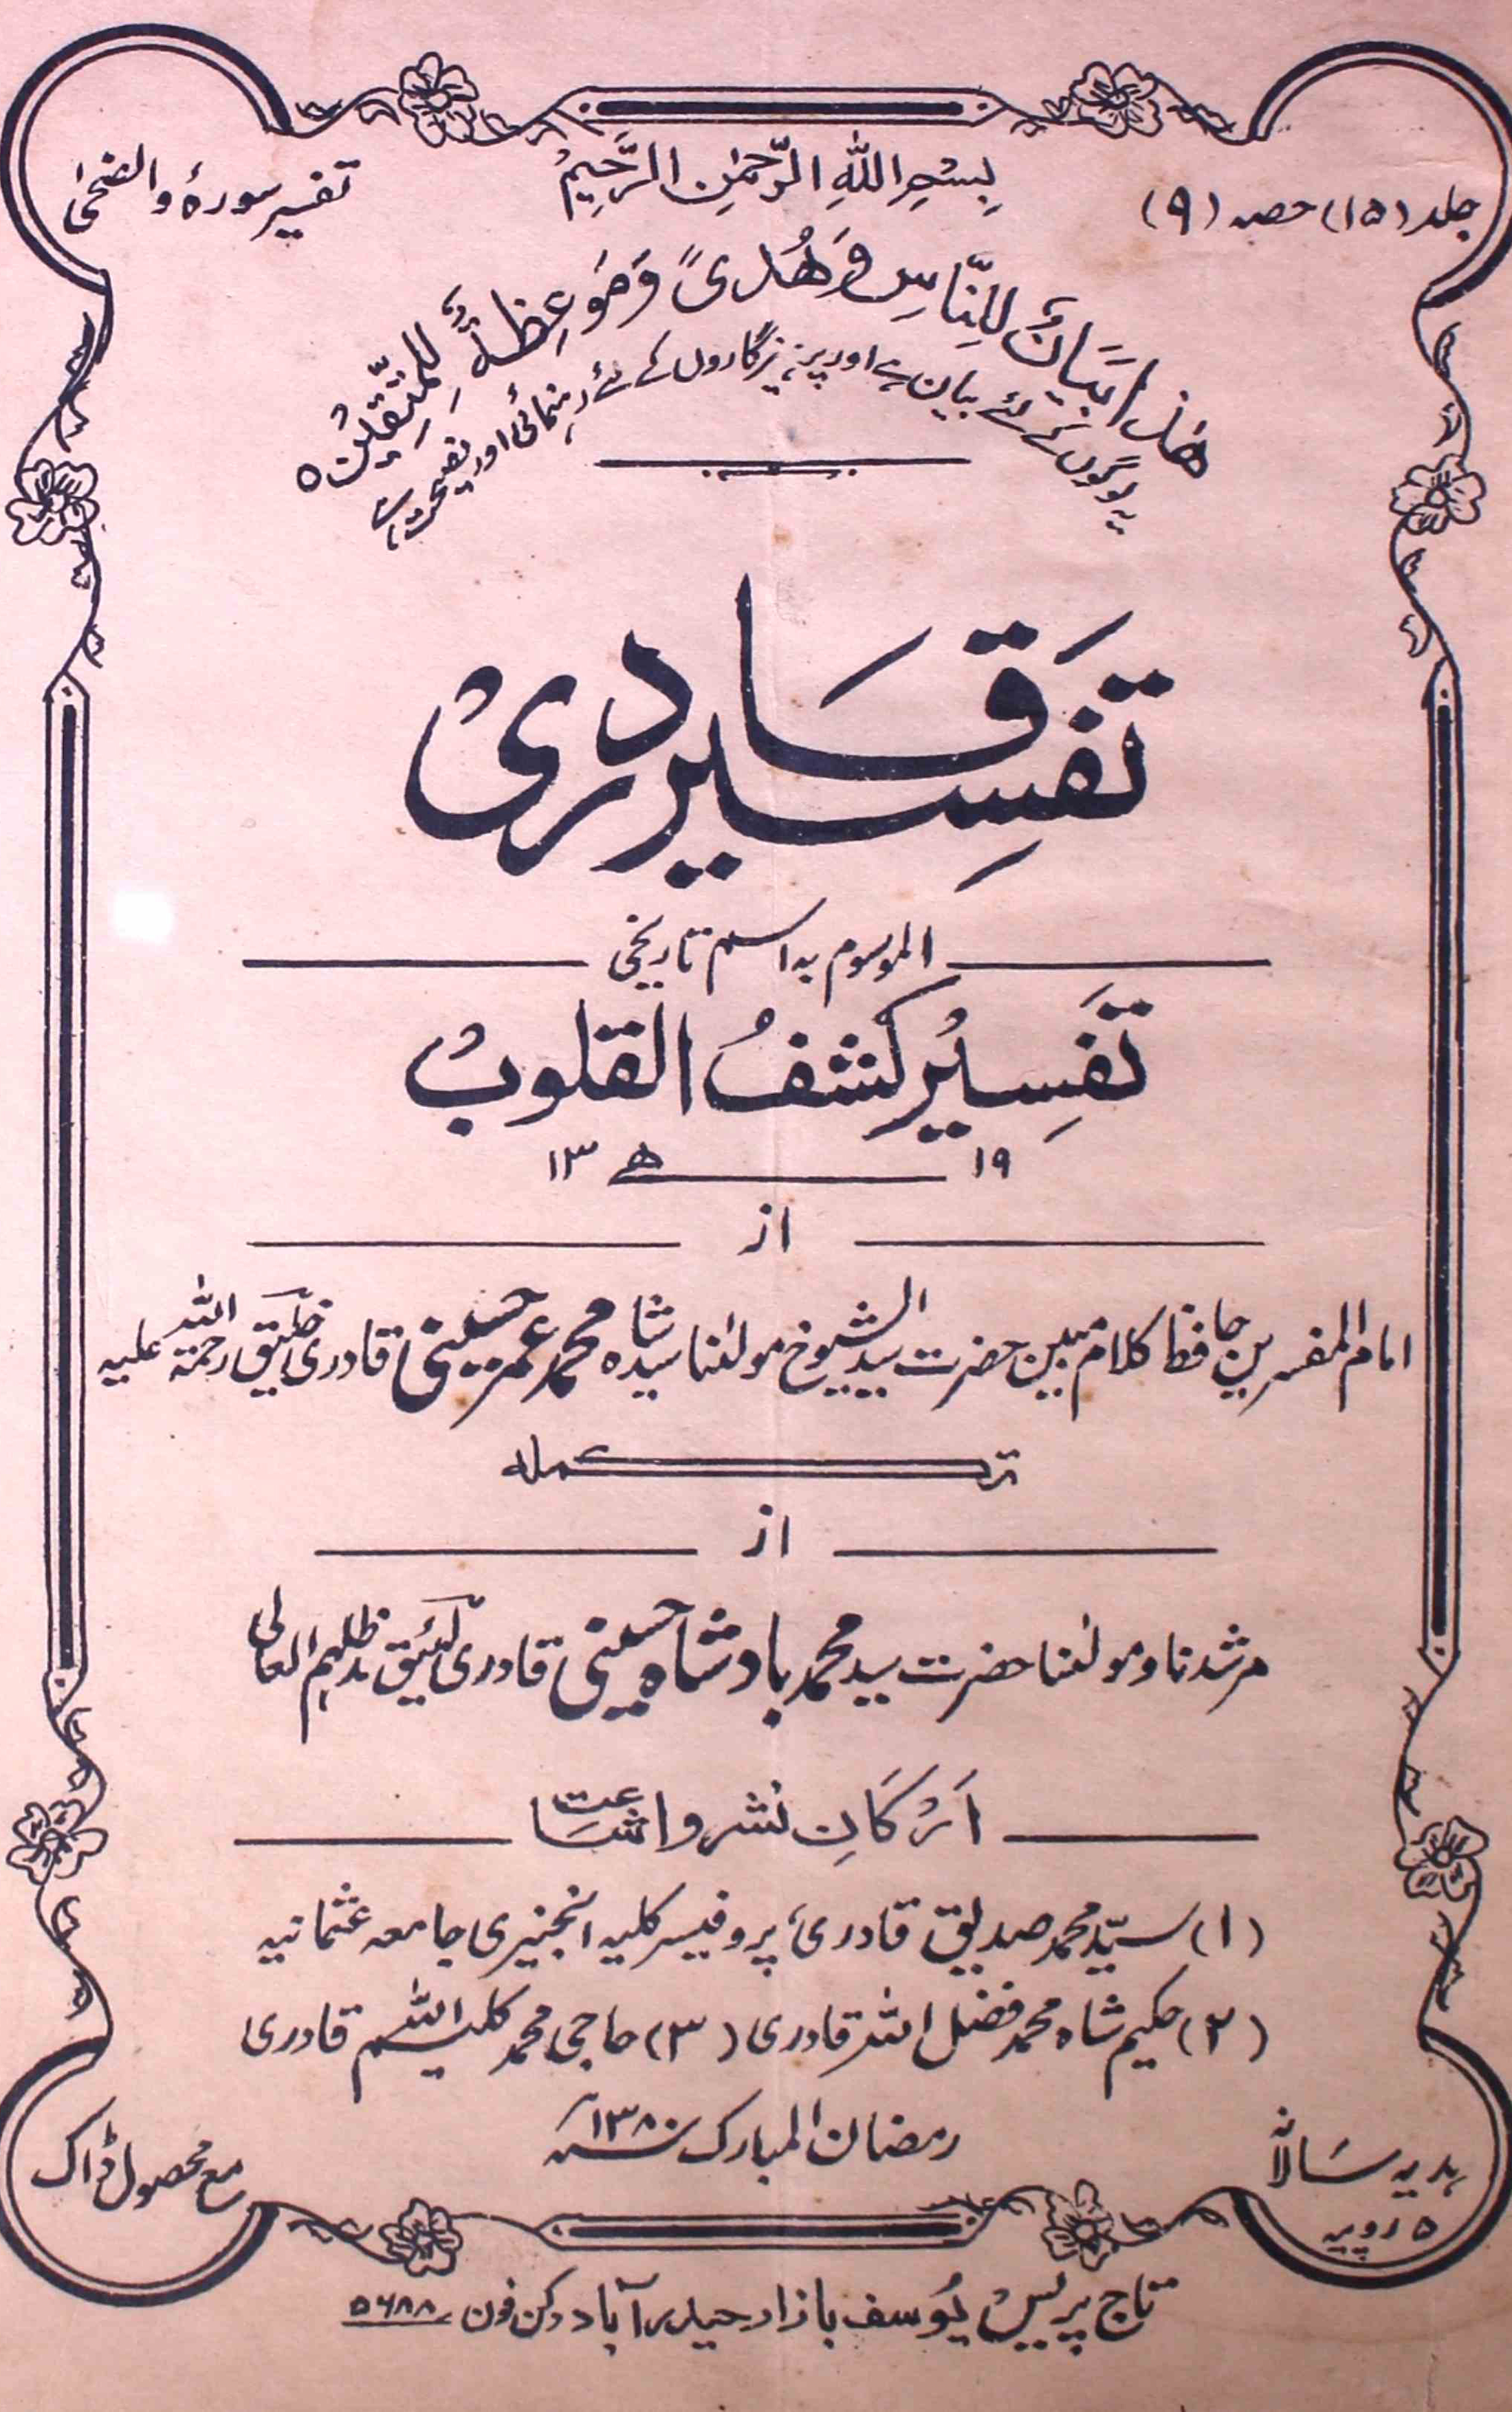 tafseer-ul-qadri-shumara-number-009-mohammad-umar-maiman-magazines